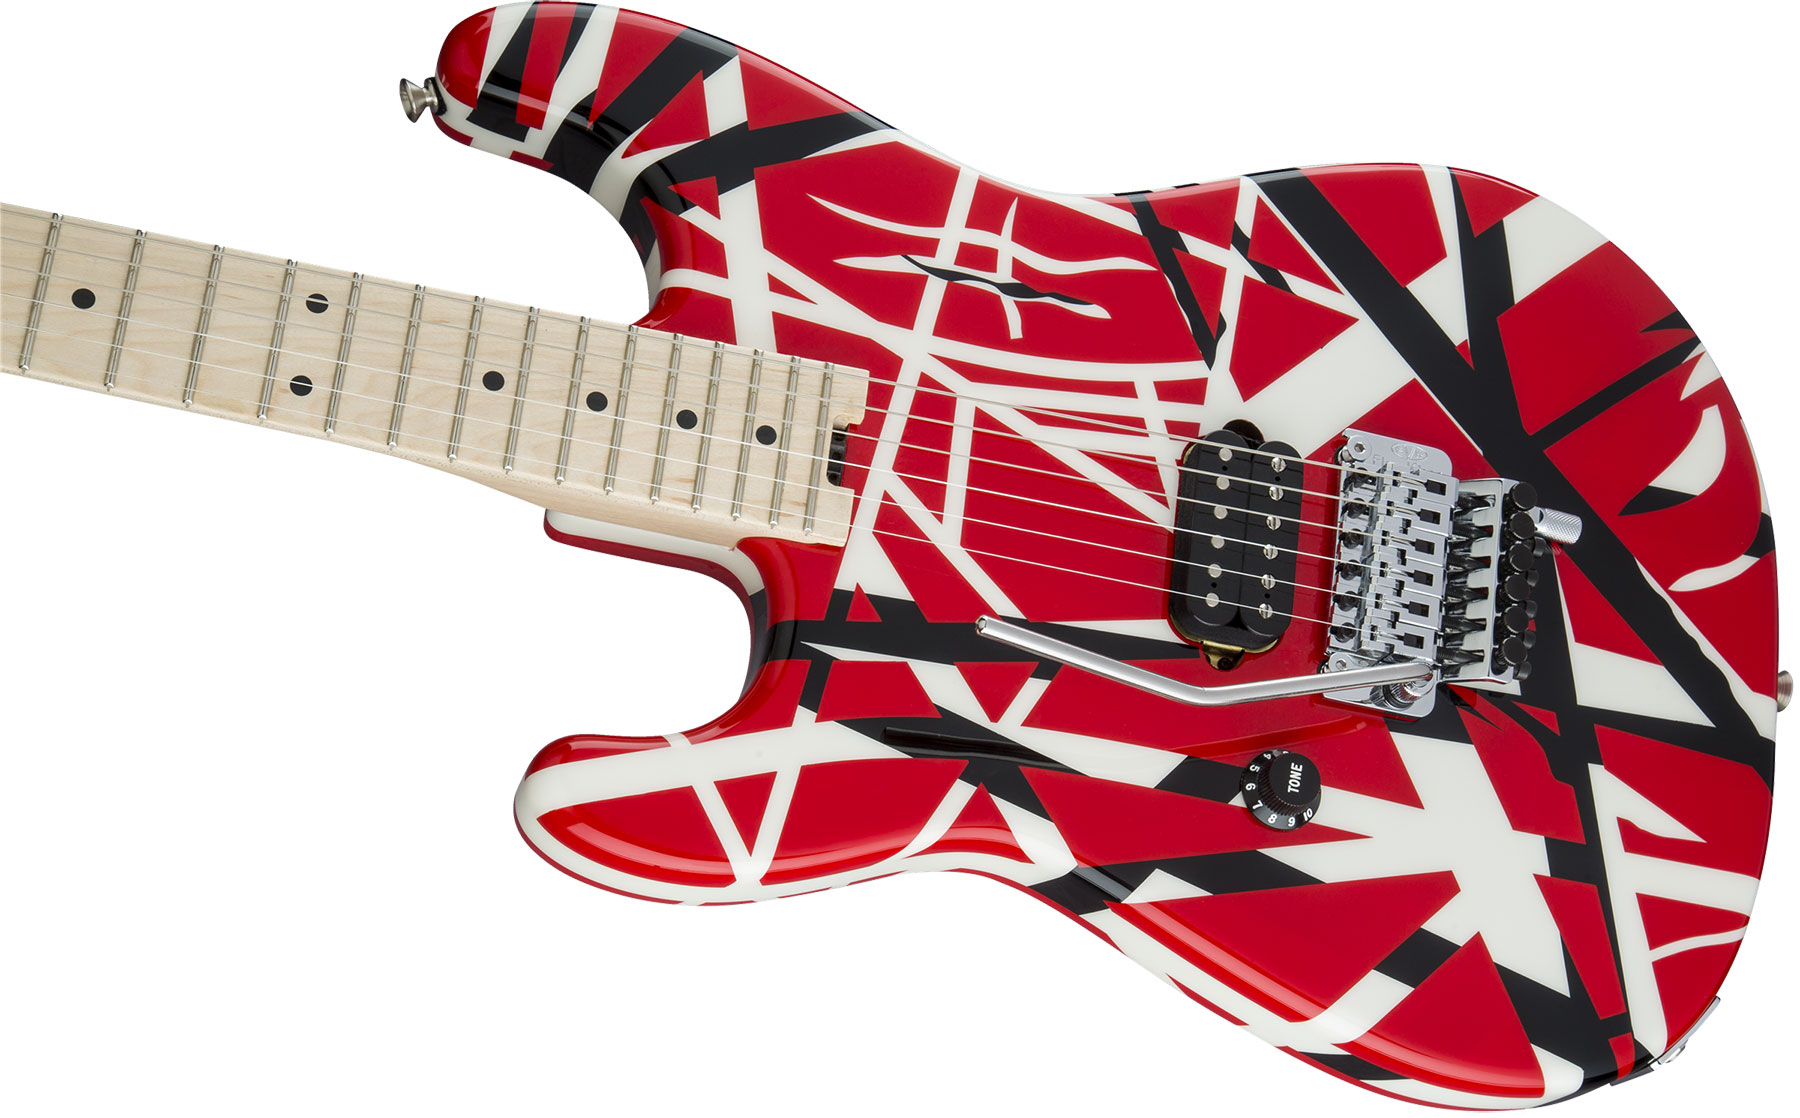 Evh Striped Series Lh Gaucher Signature H Fr Mn - Red Black White Stripes - Linkshandige elektrische gitaar - Variation 2